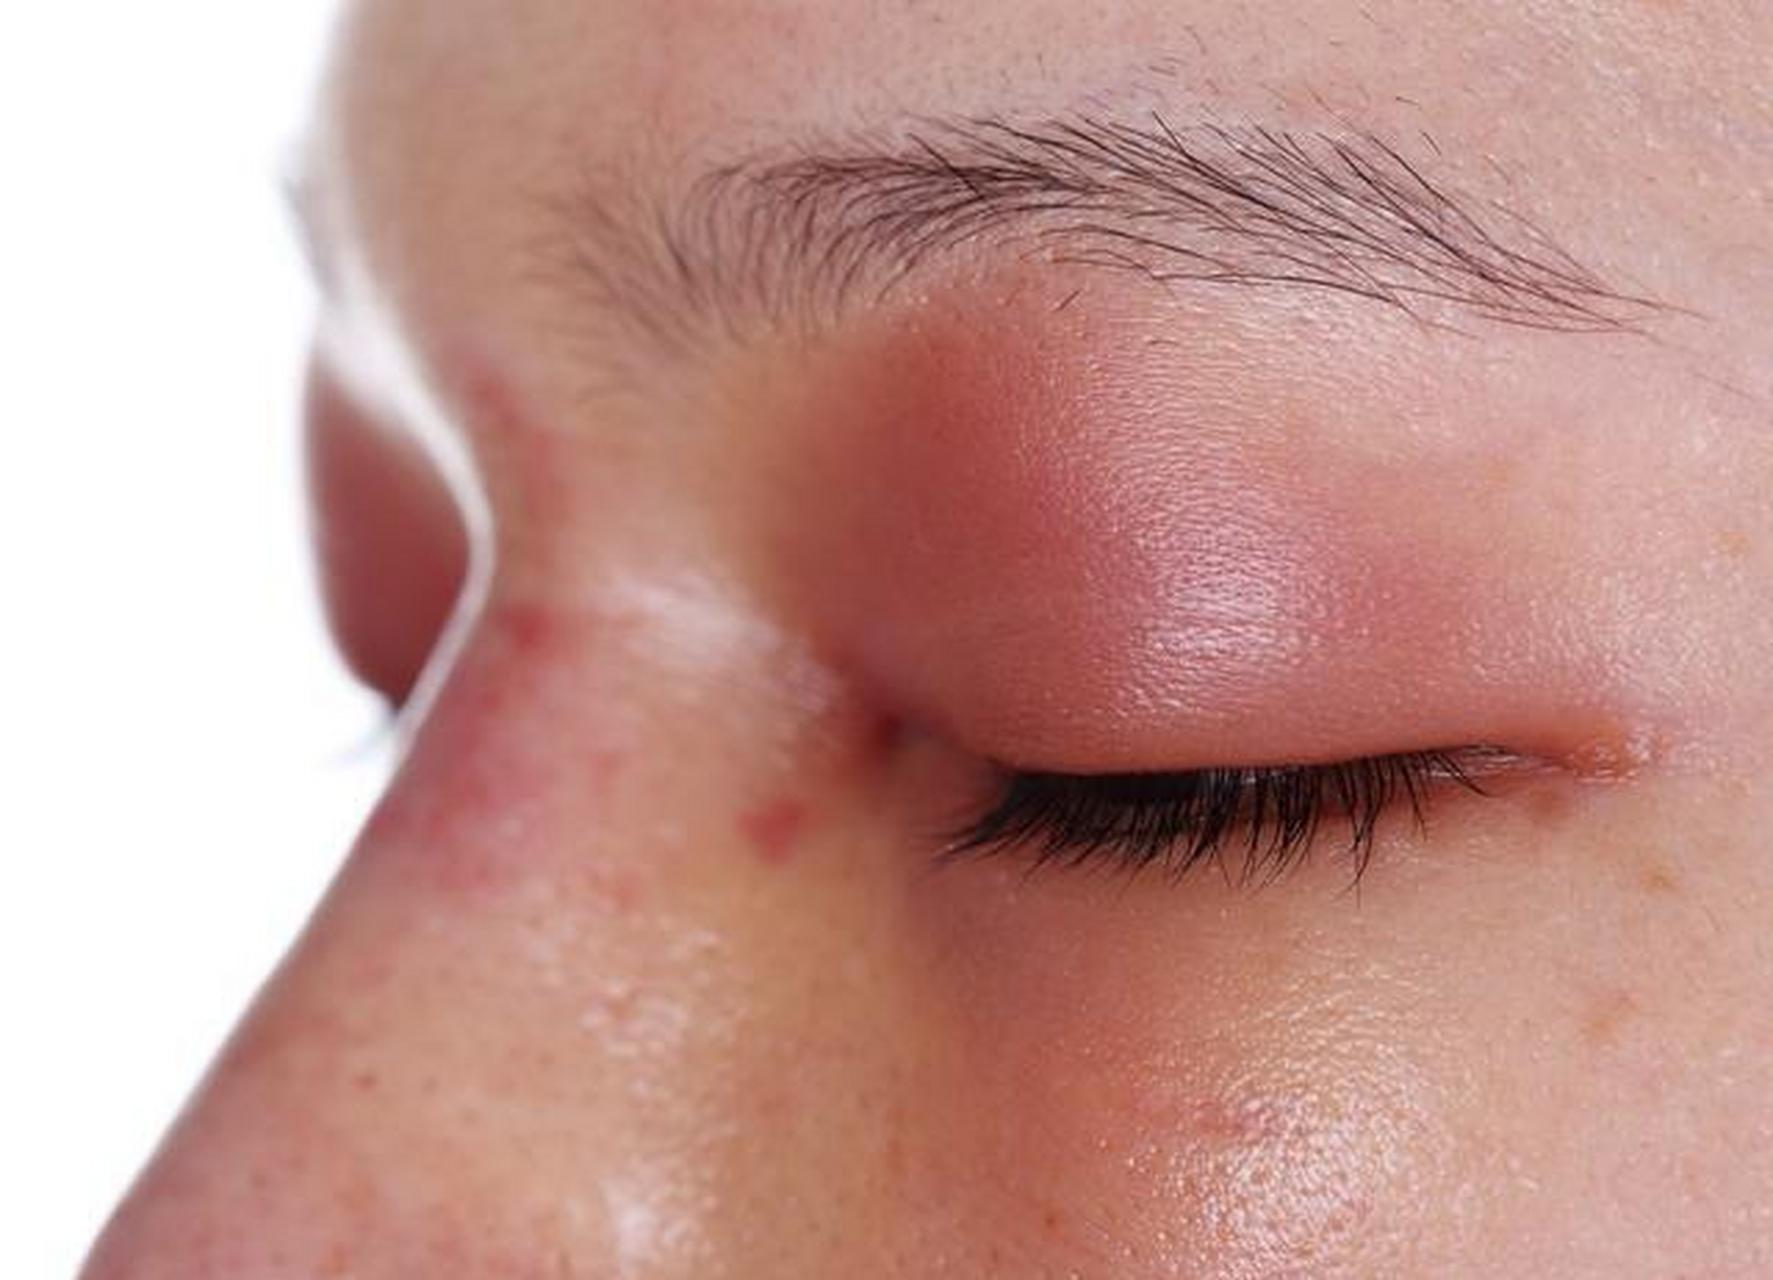 五个征兆可能是肾炎 一,眼睑浮肿 如果早晨起来眼睑或面部,出现浮肿